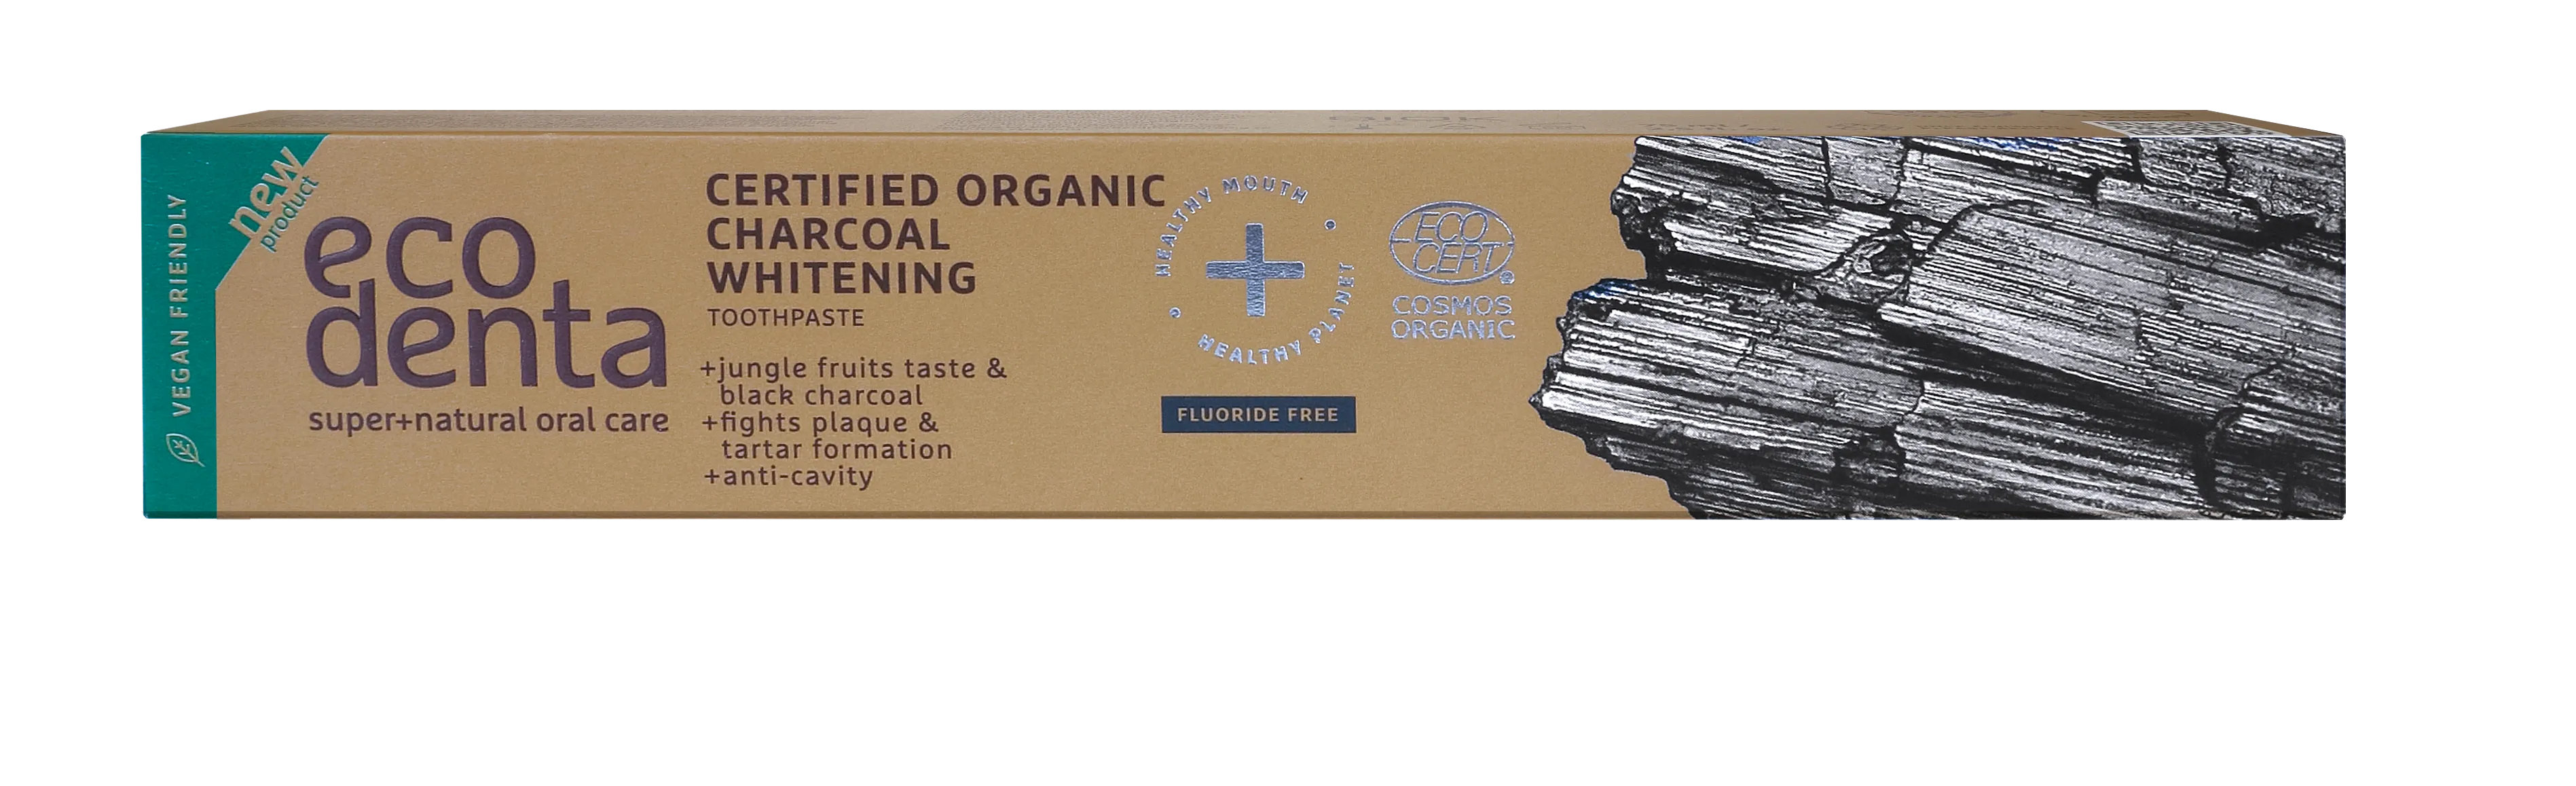 Ecodenta Certyfikowana Cosmos Organic organiczna wybielająca pasta do zębów z węglem aktywnym, 75 ml